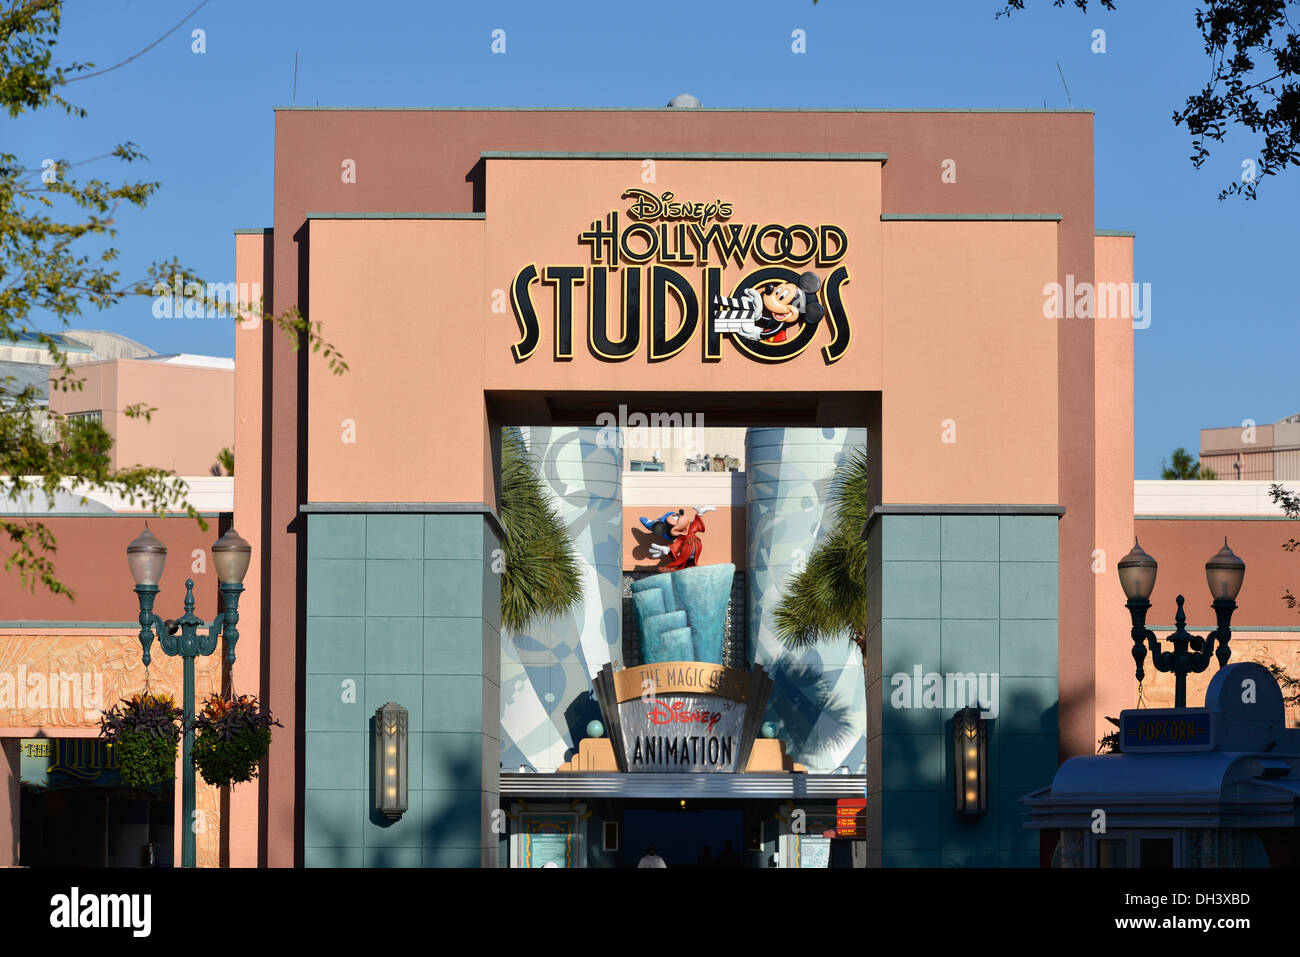 Hollywood Studios, Eintritt zur Magie von Disney Animation, Disney World, Orlando, Florida Stockfoto